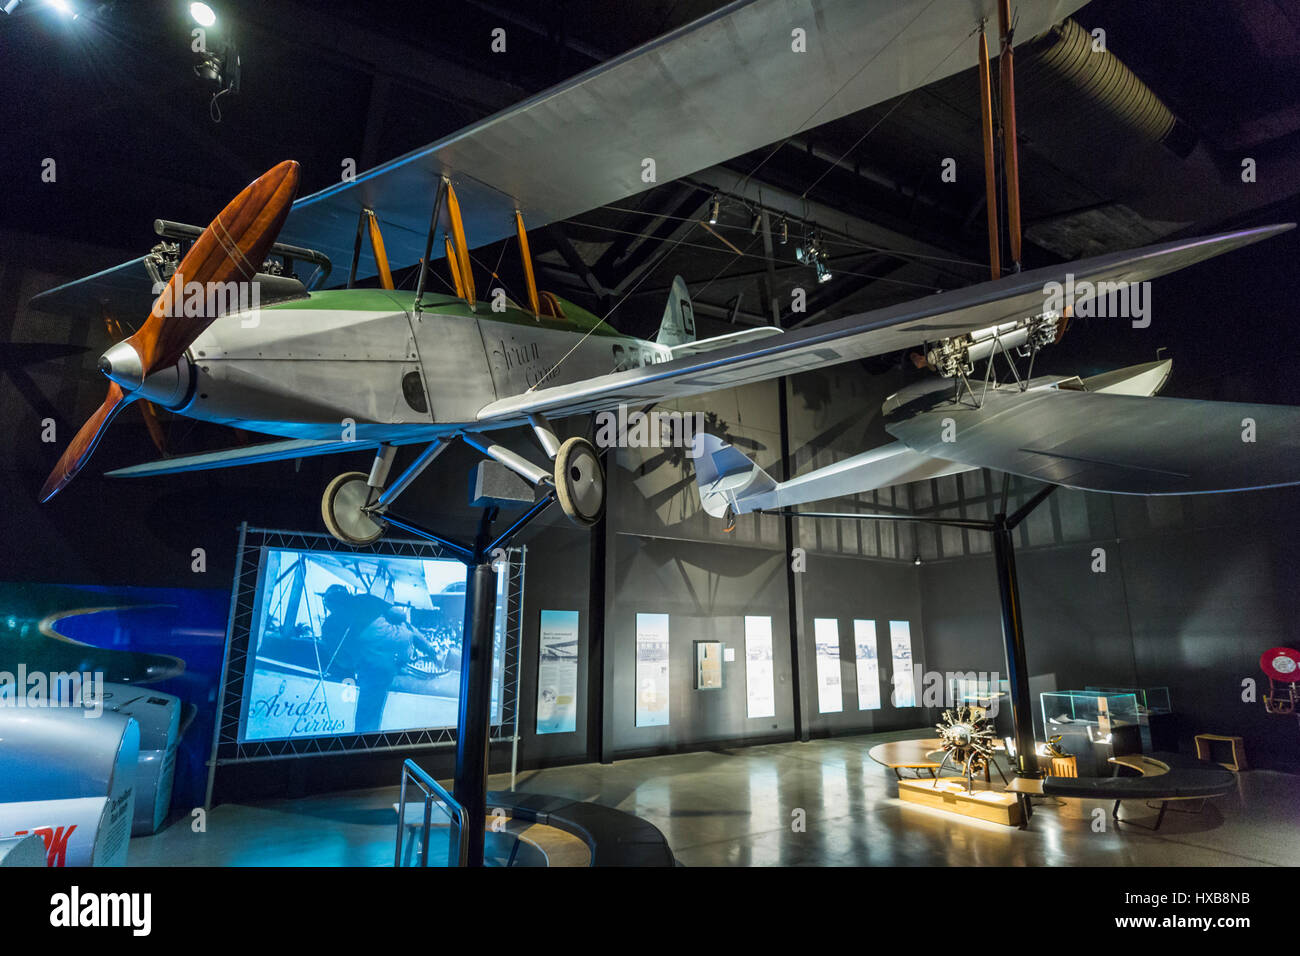 Réplicas de aviones, incluyendo el Avro aviares y exhibiciones interactivas dentro del Hinkler Hall de la aviación. Bundaberg, Queensland, Australia Foto de stock